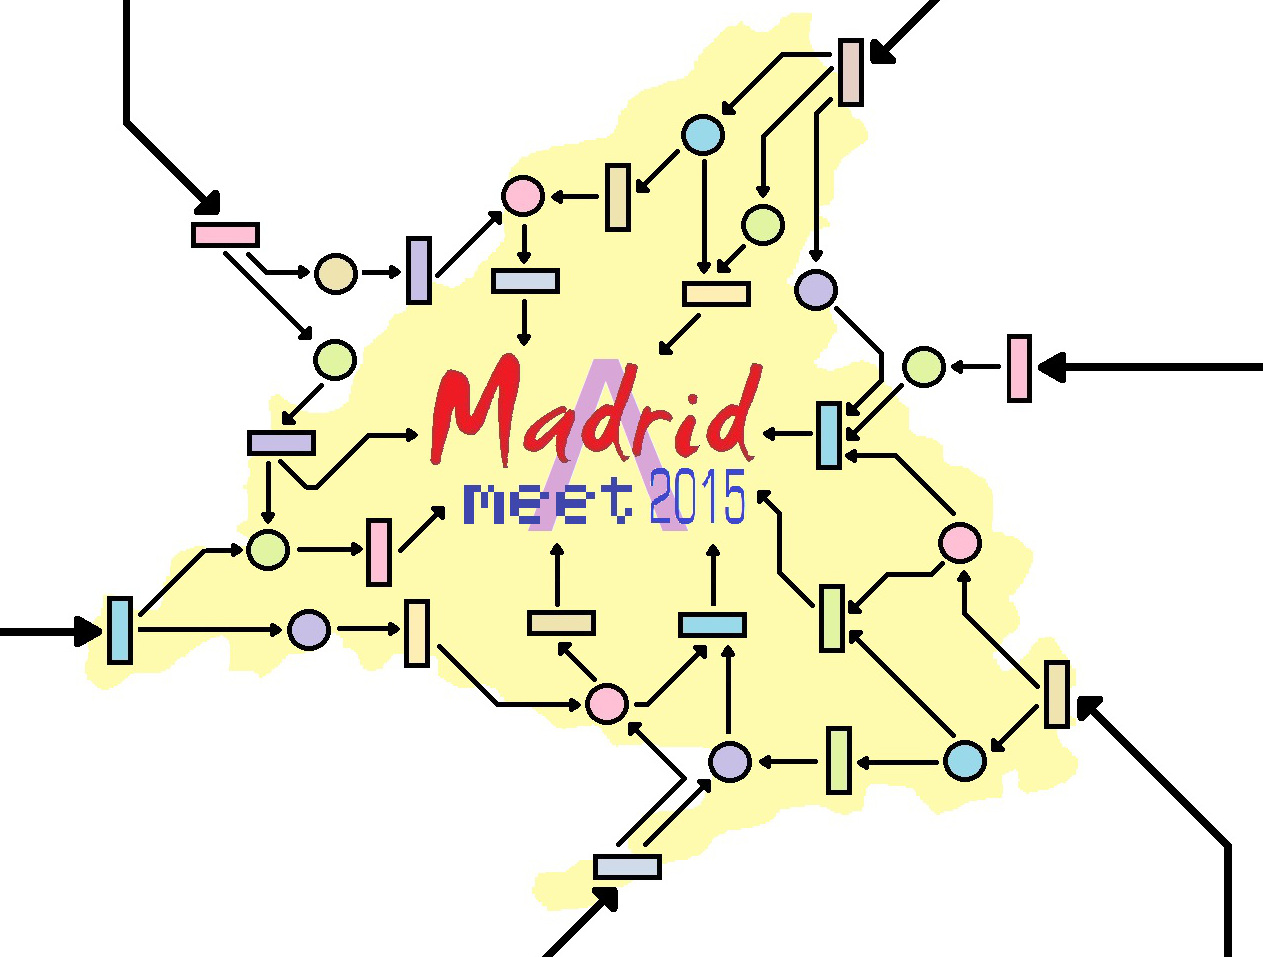 Madrid Meet 2015